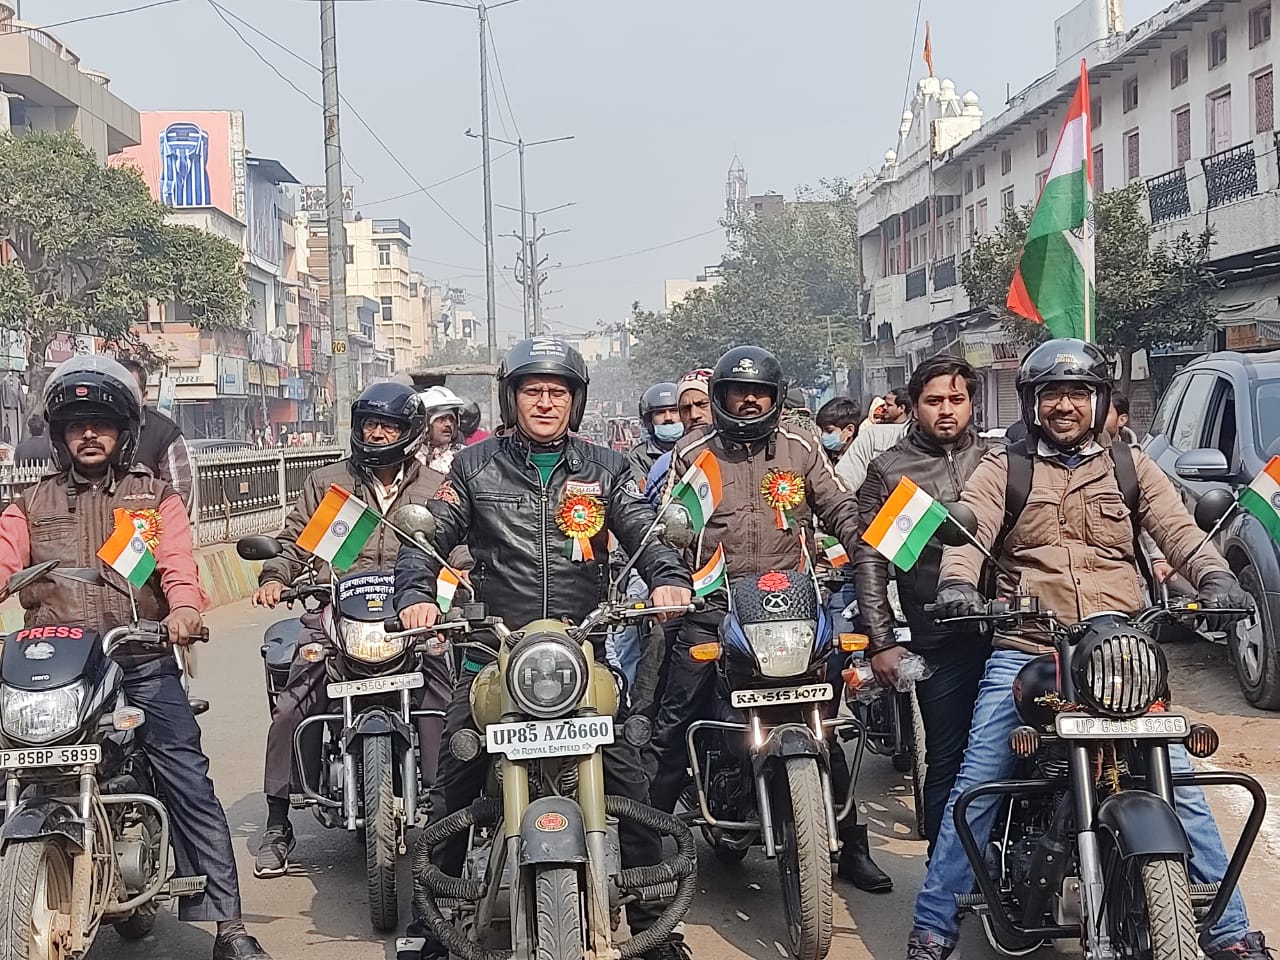 गणतंत्र दिवस पर ब्रज यातायात एवं पर्यावरण जन जागरूकता समिति उत्तर प्रदेश द्वारा मथुरा महानगर में निकाली गई बाइक रैली | New India Times